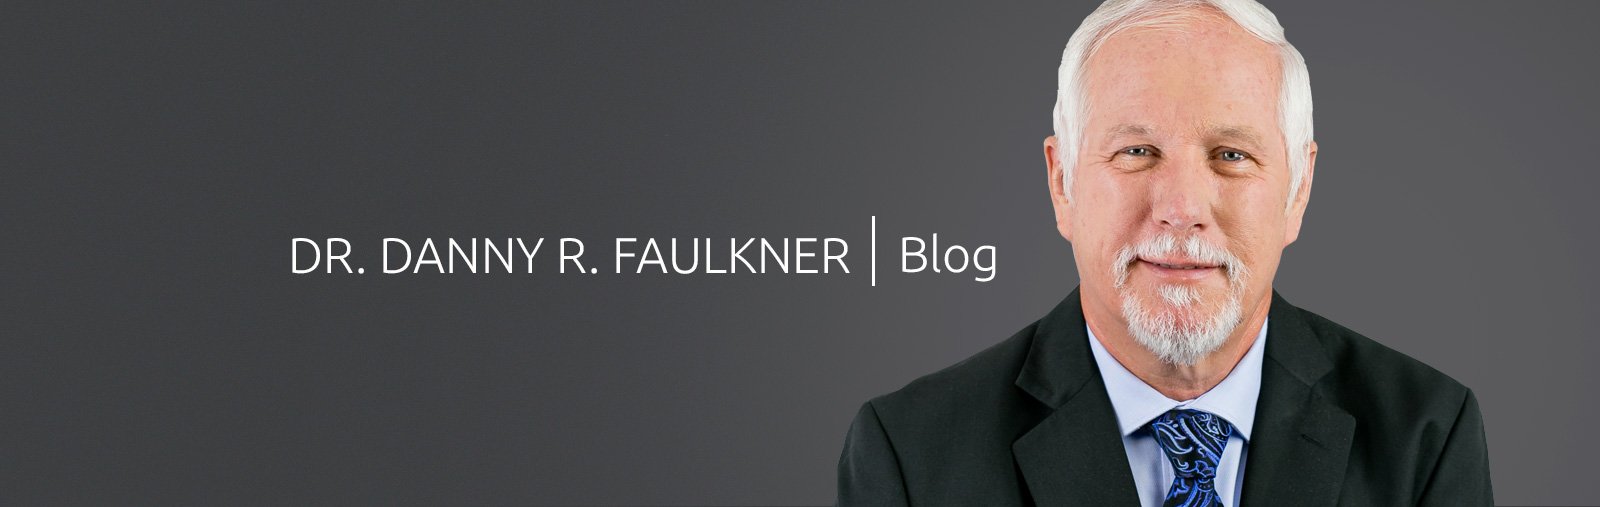 Danny Faulkner Blog